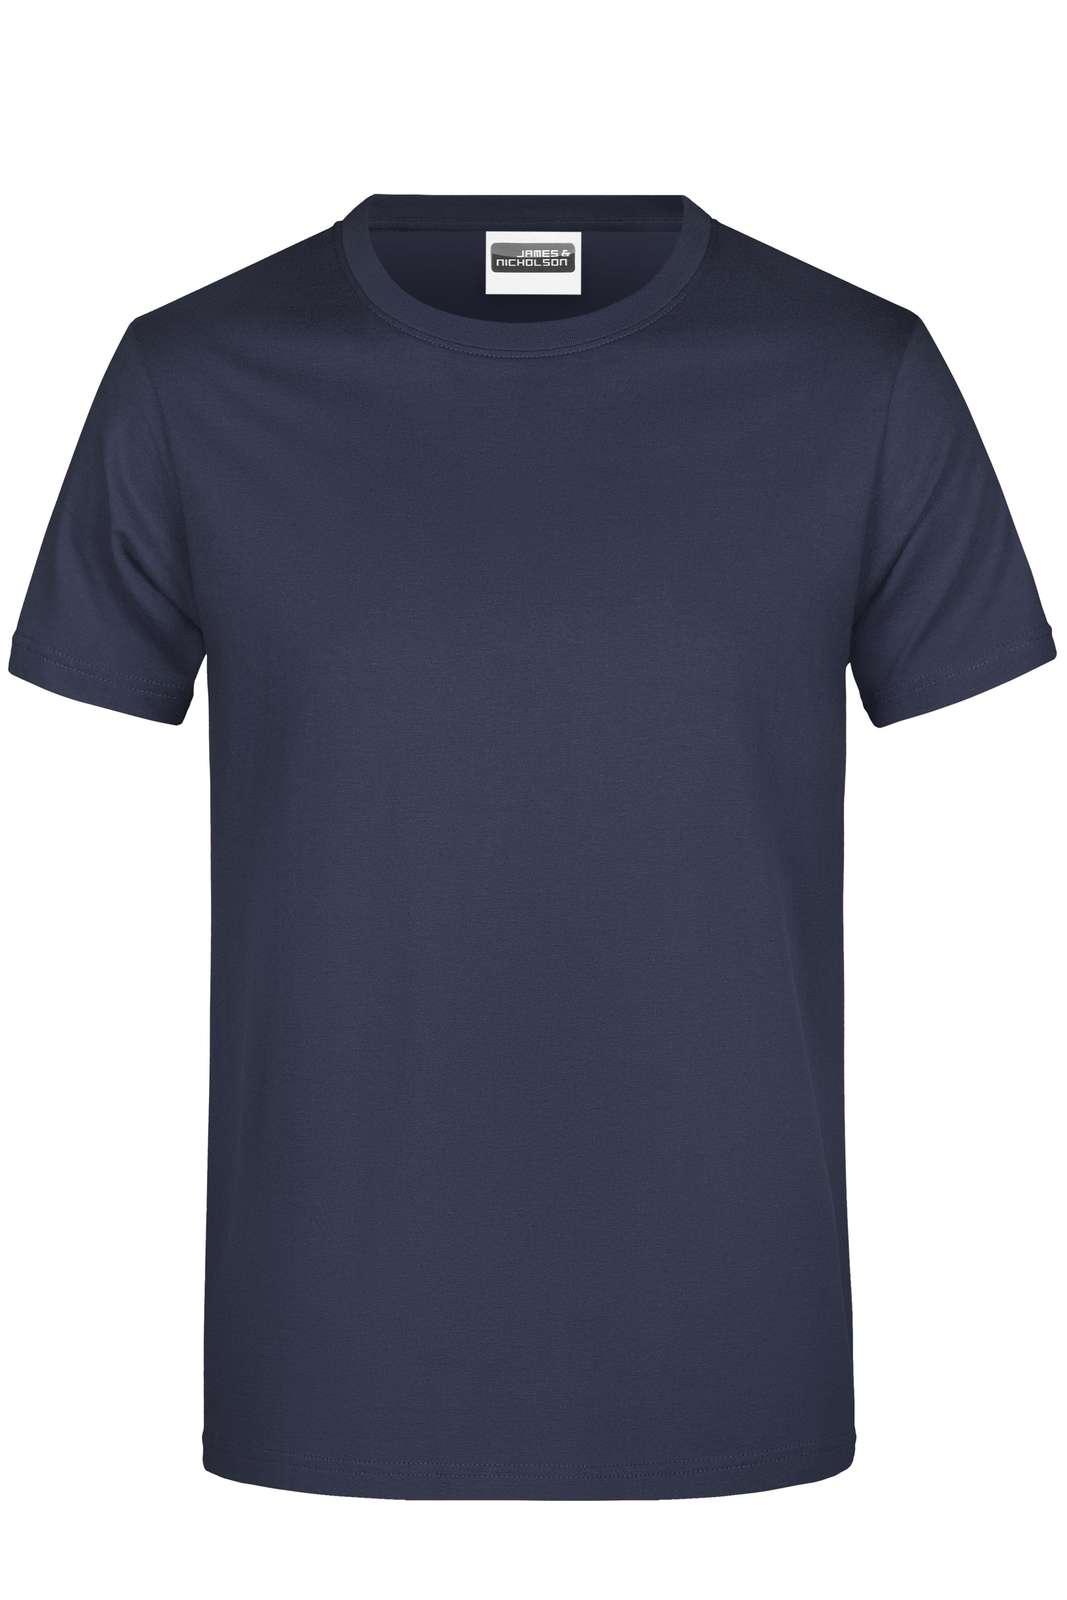 J&N PROMO-T BOY 150 - T-Shirt - JA Profil 